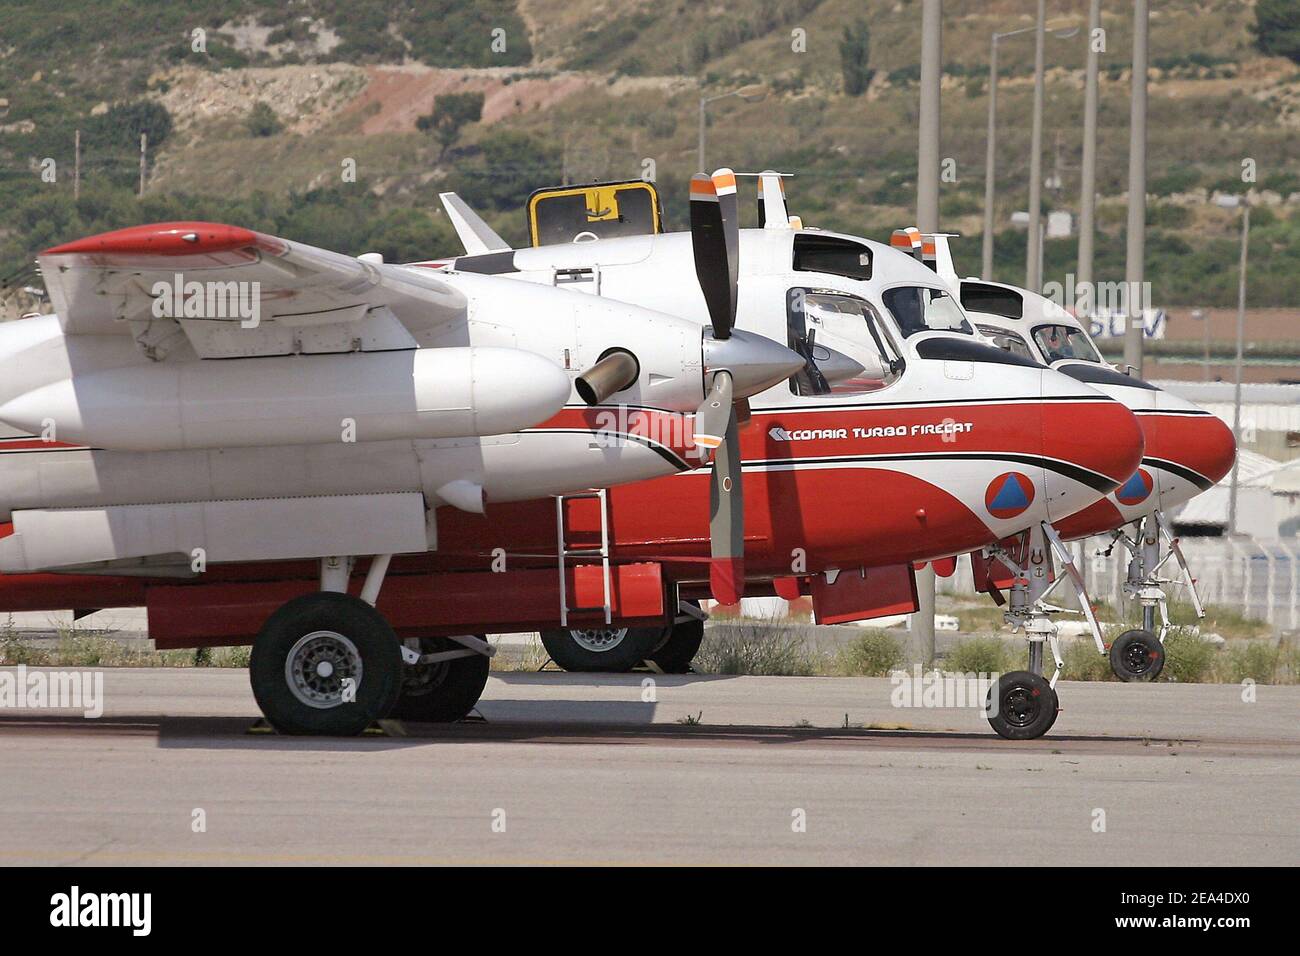 Ein Conair Turbo Firecat ('Tracker')-Feuerbomber der französischen Zivilsicherheit auf seinem Luftwaffenstützpunkt in Marignane bei Marseille, Südfrankreich, am 20. Juni 2005. Der Wasserbomber ist in der Lage, mehr als 3.000 Liter feuerhemmend zu tanken, um Waldbrände zu bekämpfen. Foto von Gerald Holubowicz/ABACA. Stockfoto